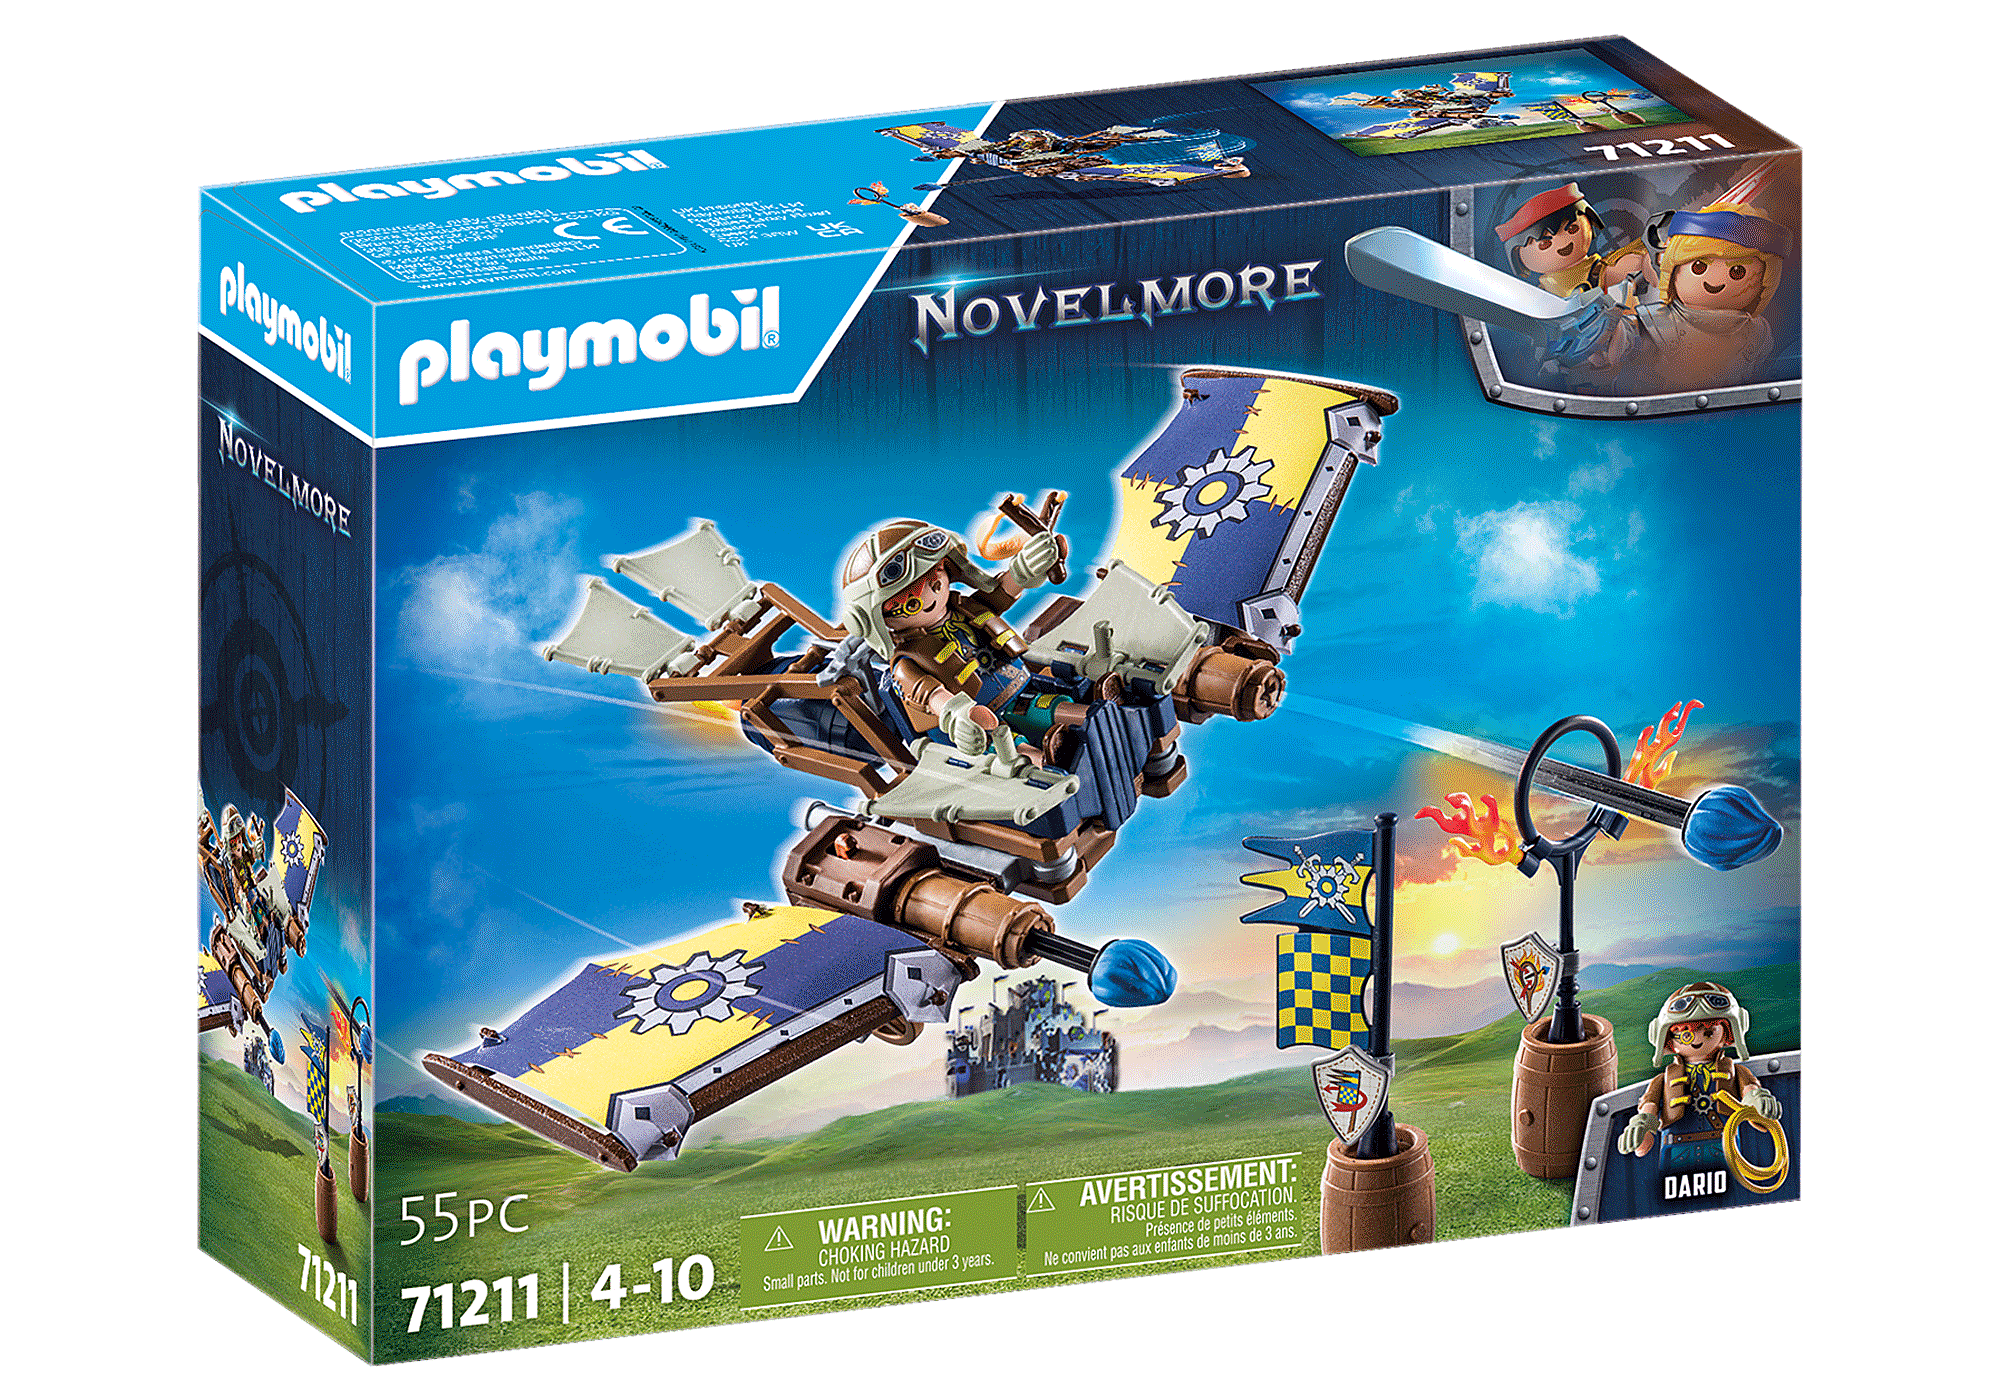 Playmobil Novelmore Dario's Glider Building Set 71211